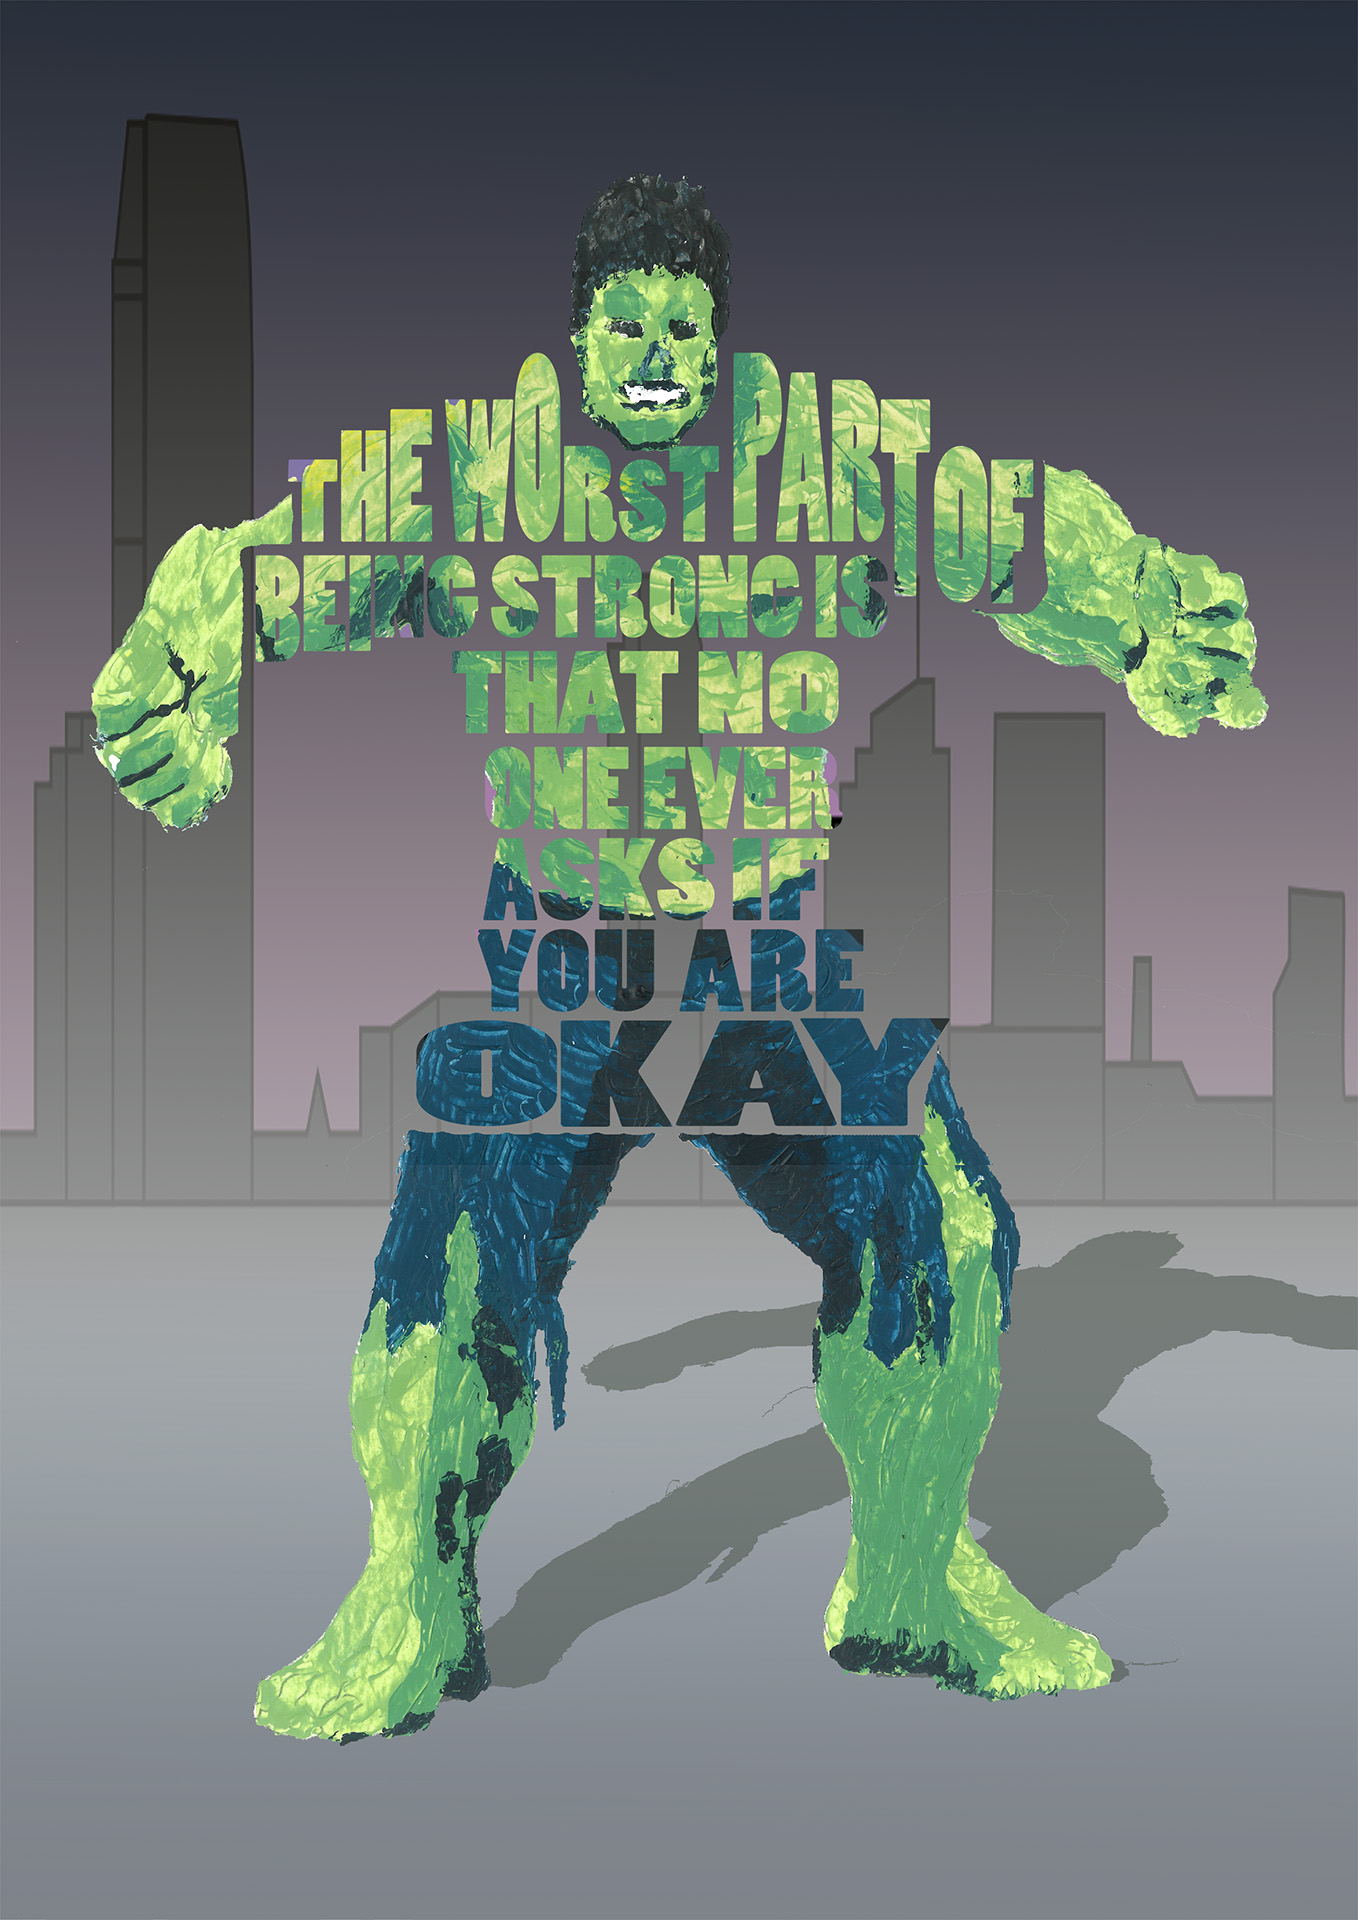 Opdracht: vervang deel van beeld door tekst (Hulk)